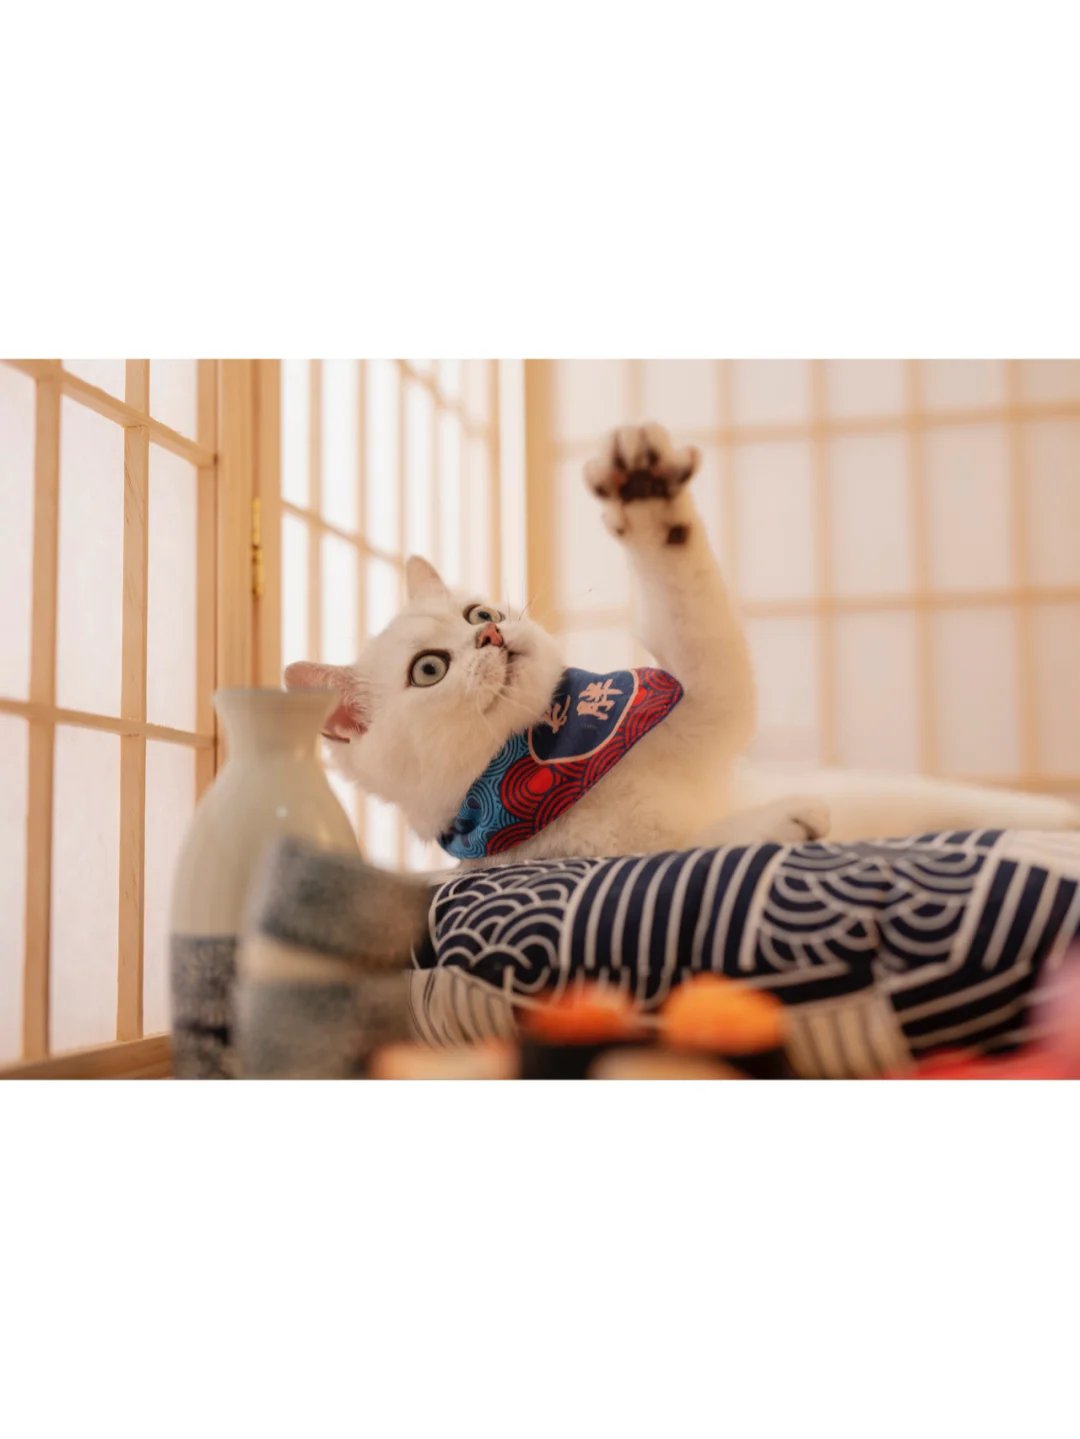 一只自带眼线的纯白色可爱猫咪图片